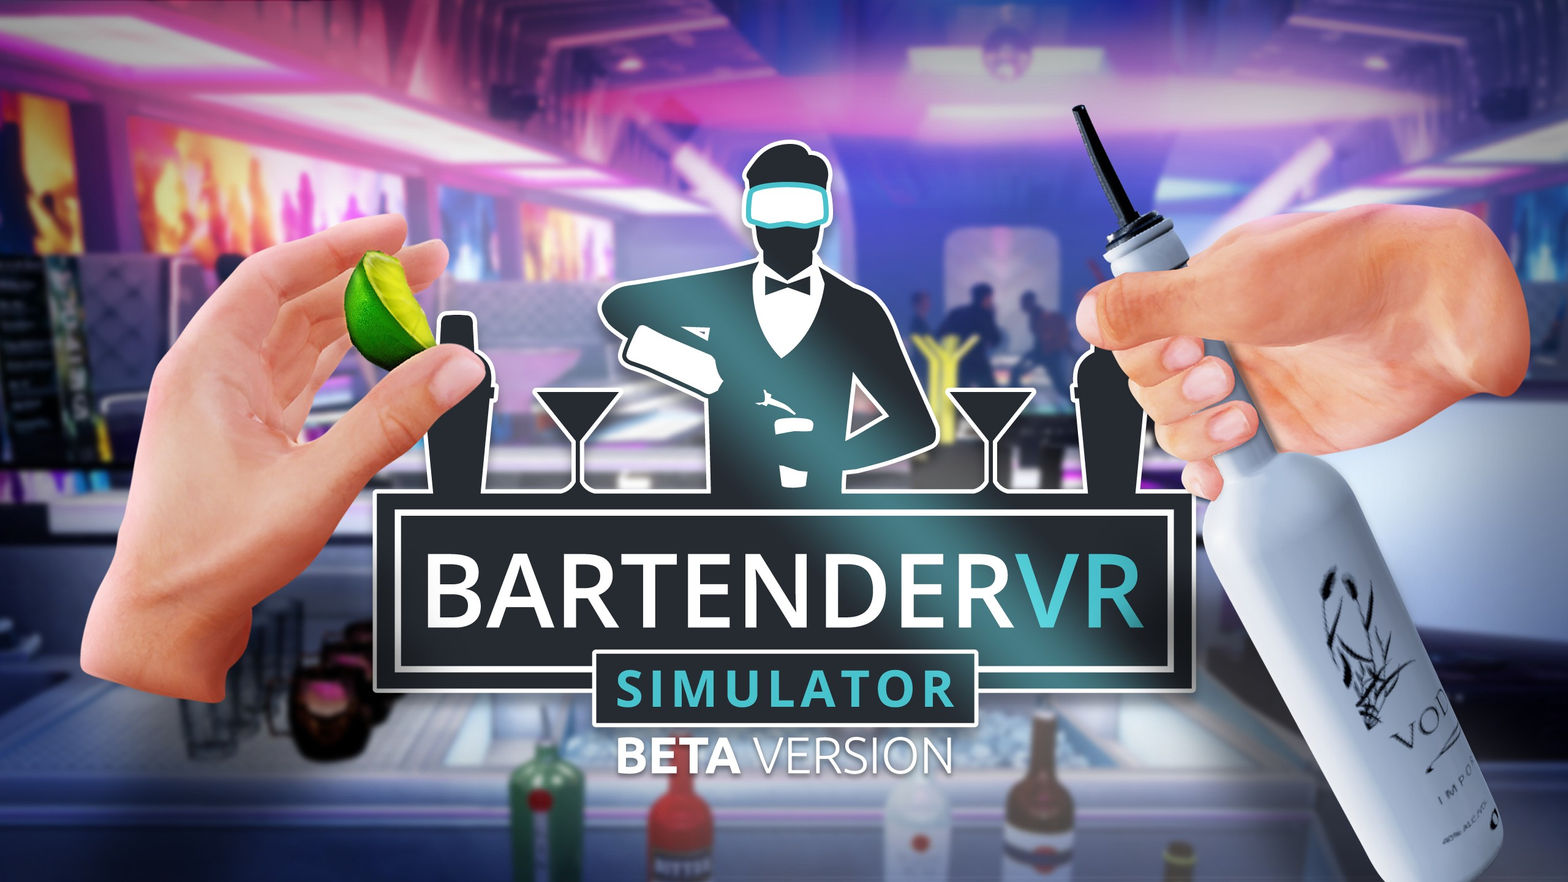 BARTENDER VR SIMULATOR beta version